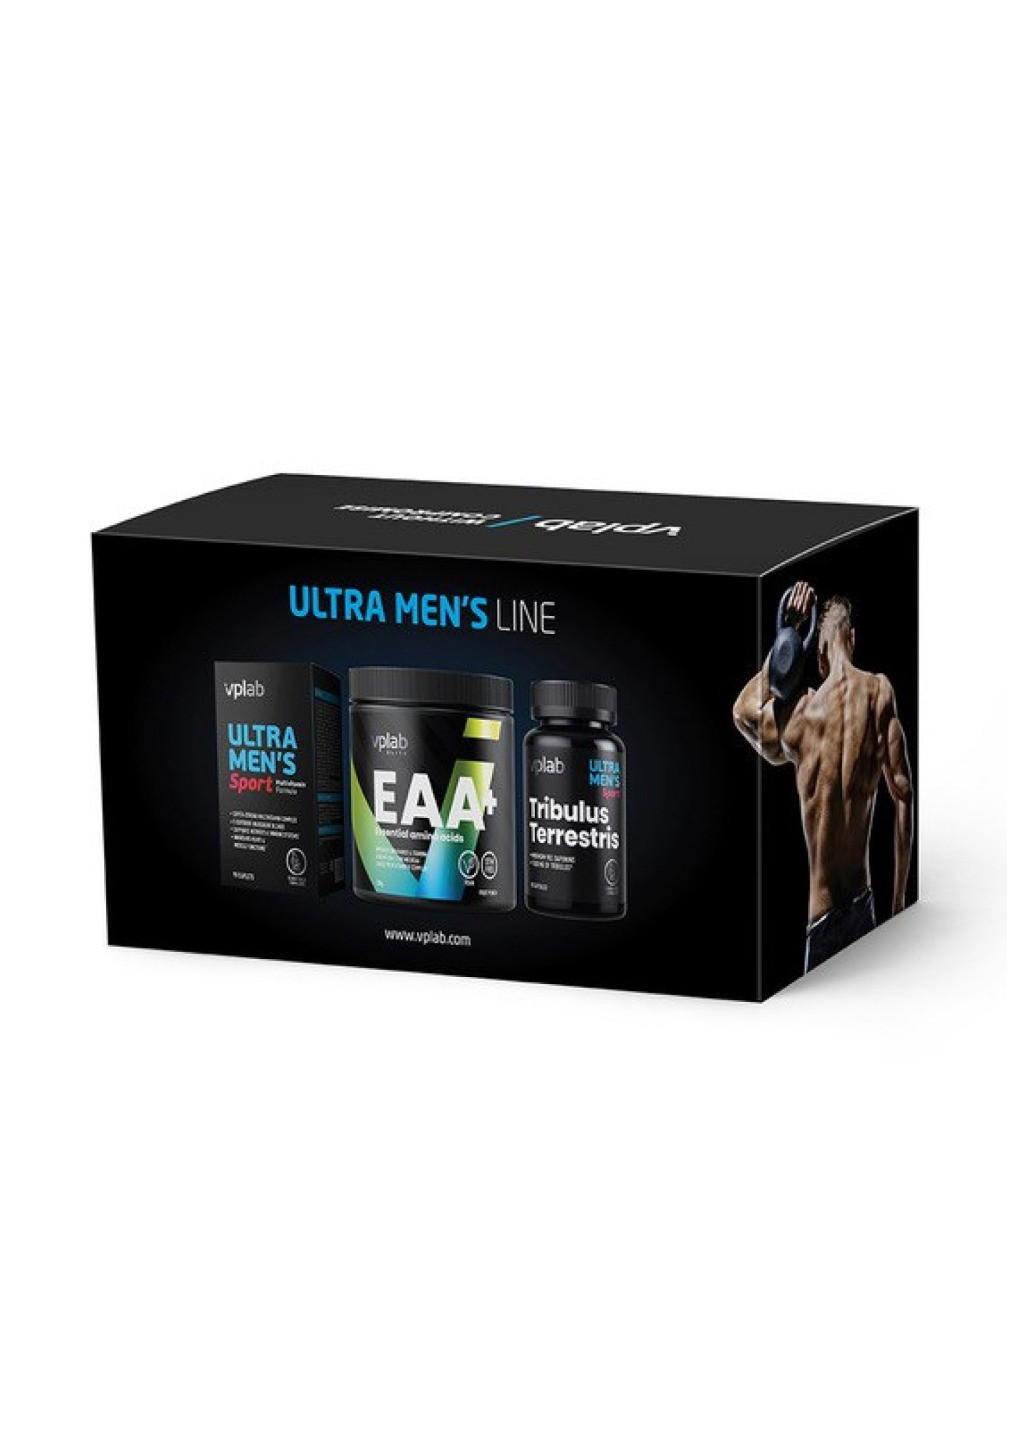 Подарунковий набор для мужчин Ultra Men's Power Box VPLab Nutrition (272820838)